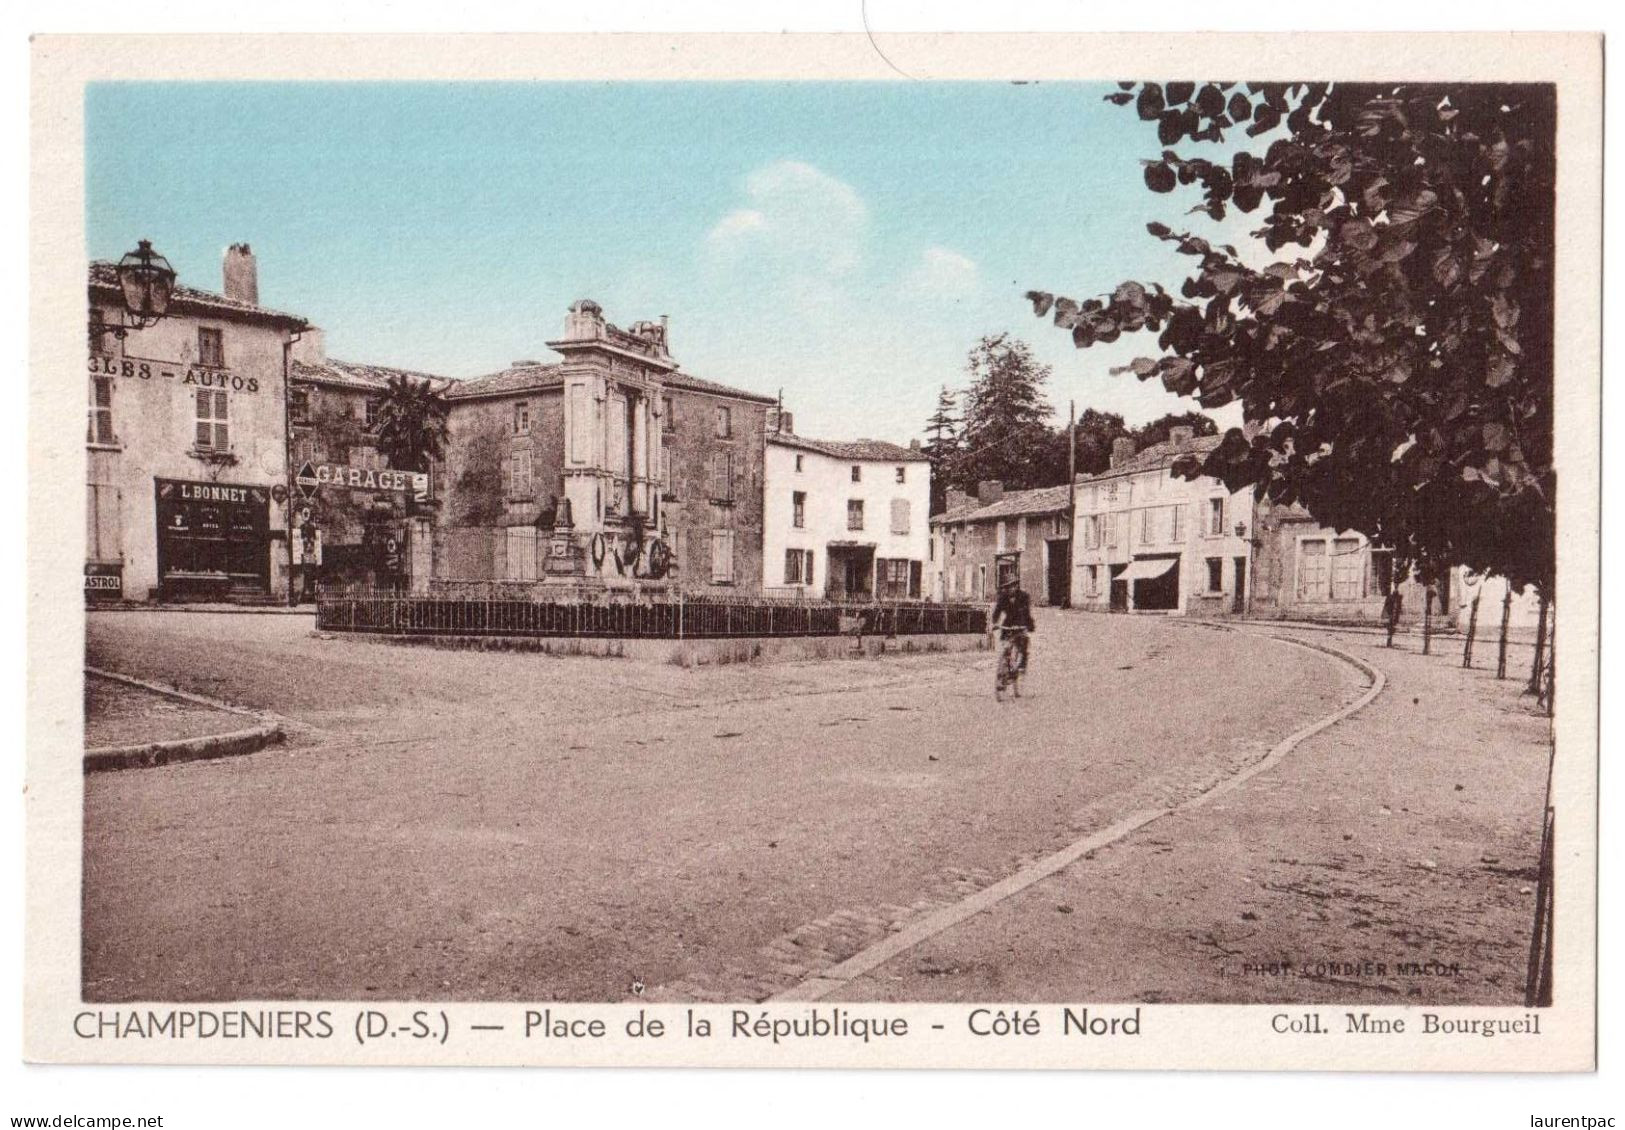 Champdeniers - Place De La République Côté Nord - édit. Mme Bourgeuil - C.I.M. Combier Macon  + Verso - Champdeniers Saint Denis